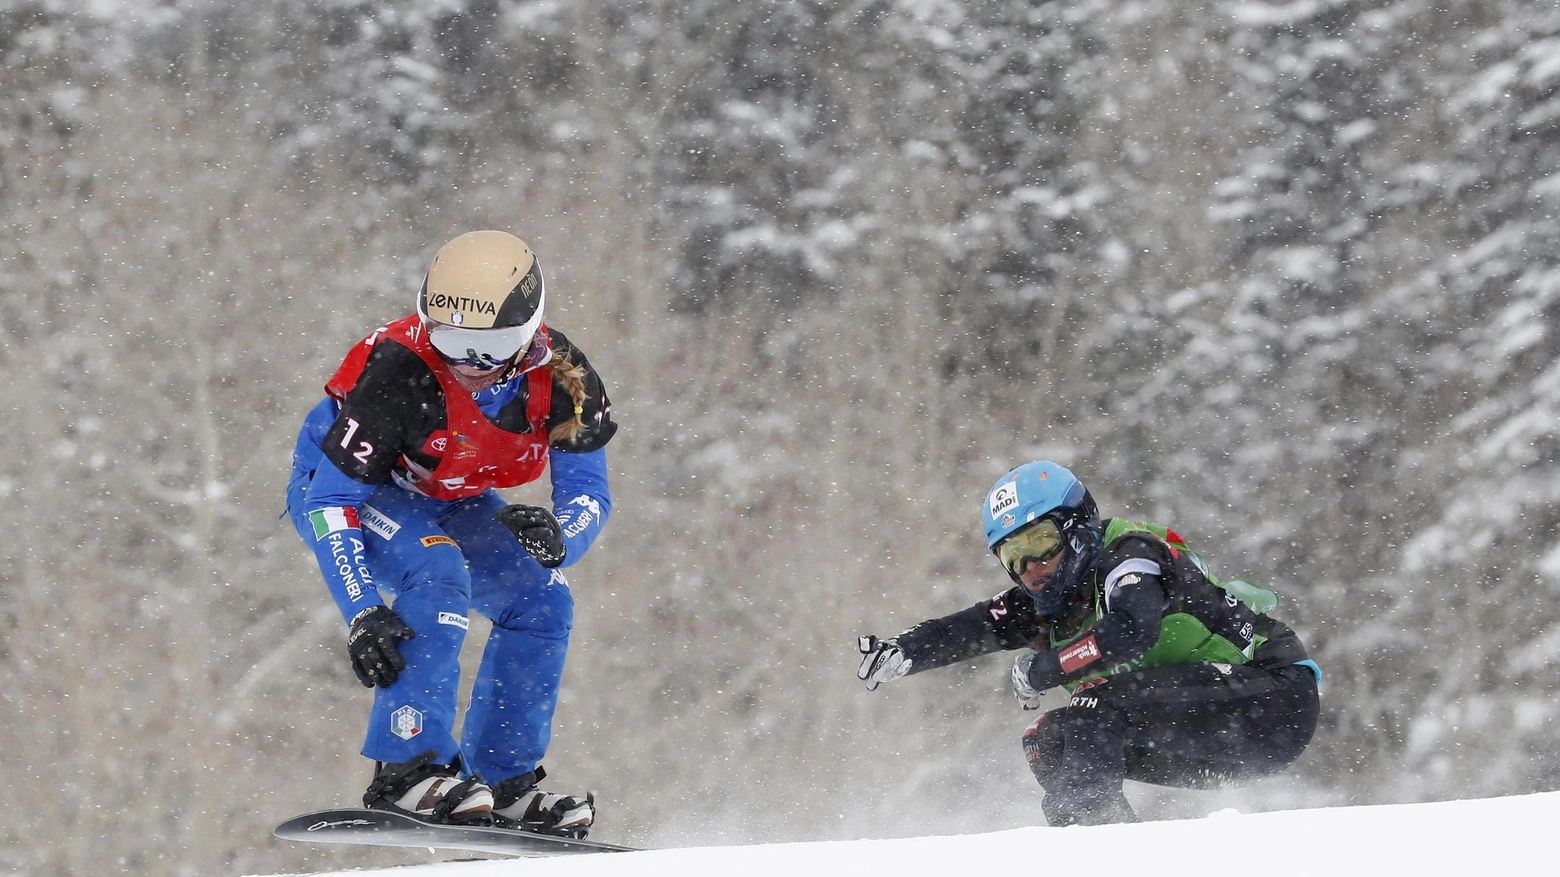 campioni in snowboard, Michela Moioli (Ansa)